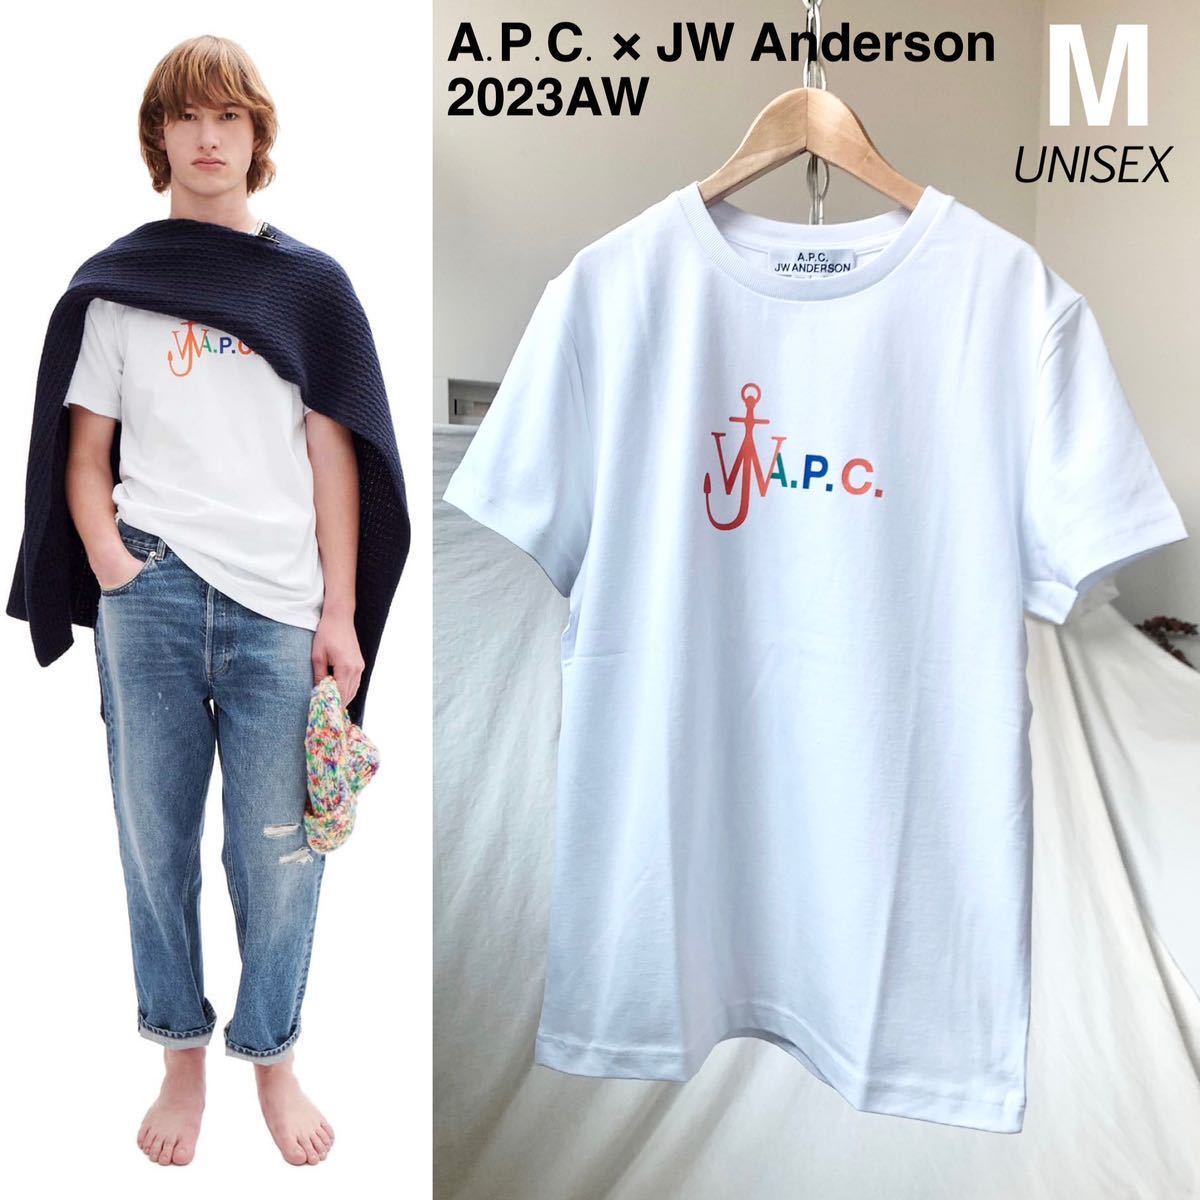 M 新品 2023AW A.P.C. X JW ANDERSON アンダーソン コラボ ロゴ Anchor Tシャツ 定2.2万 白 ユニセックス メンズ APC